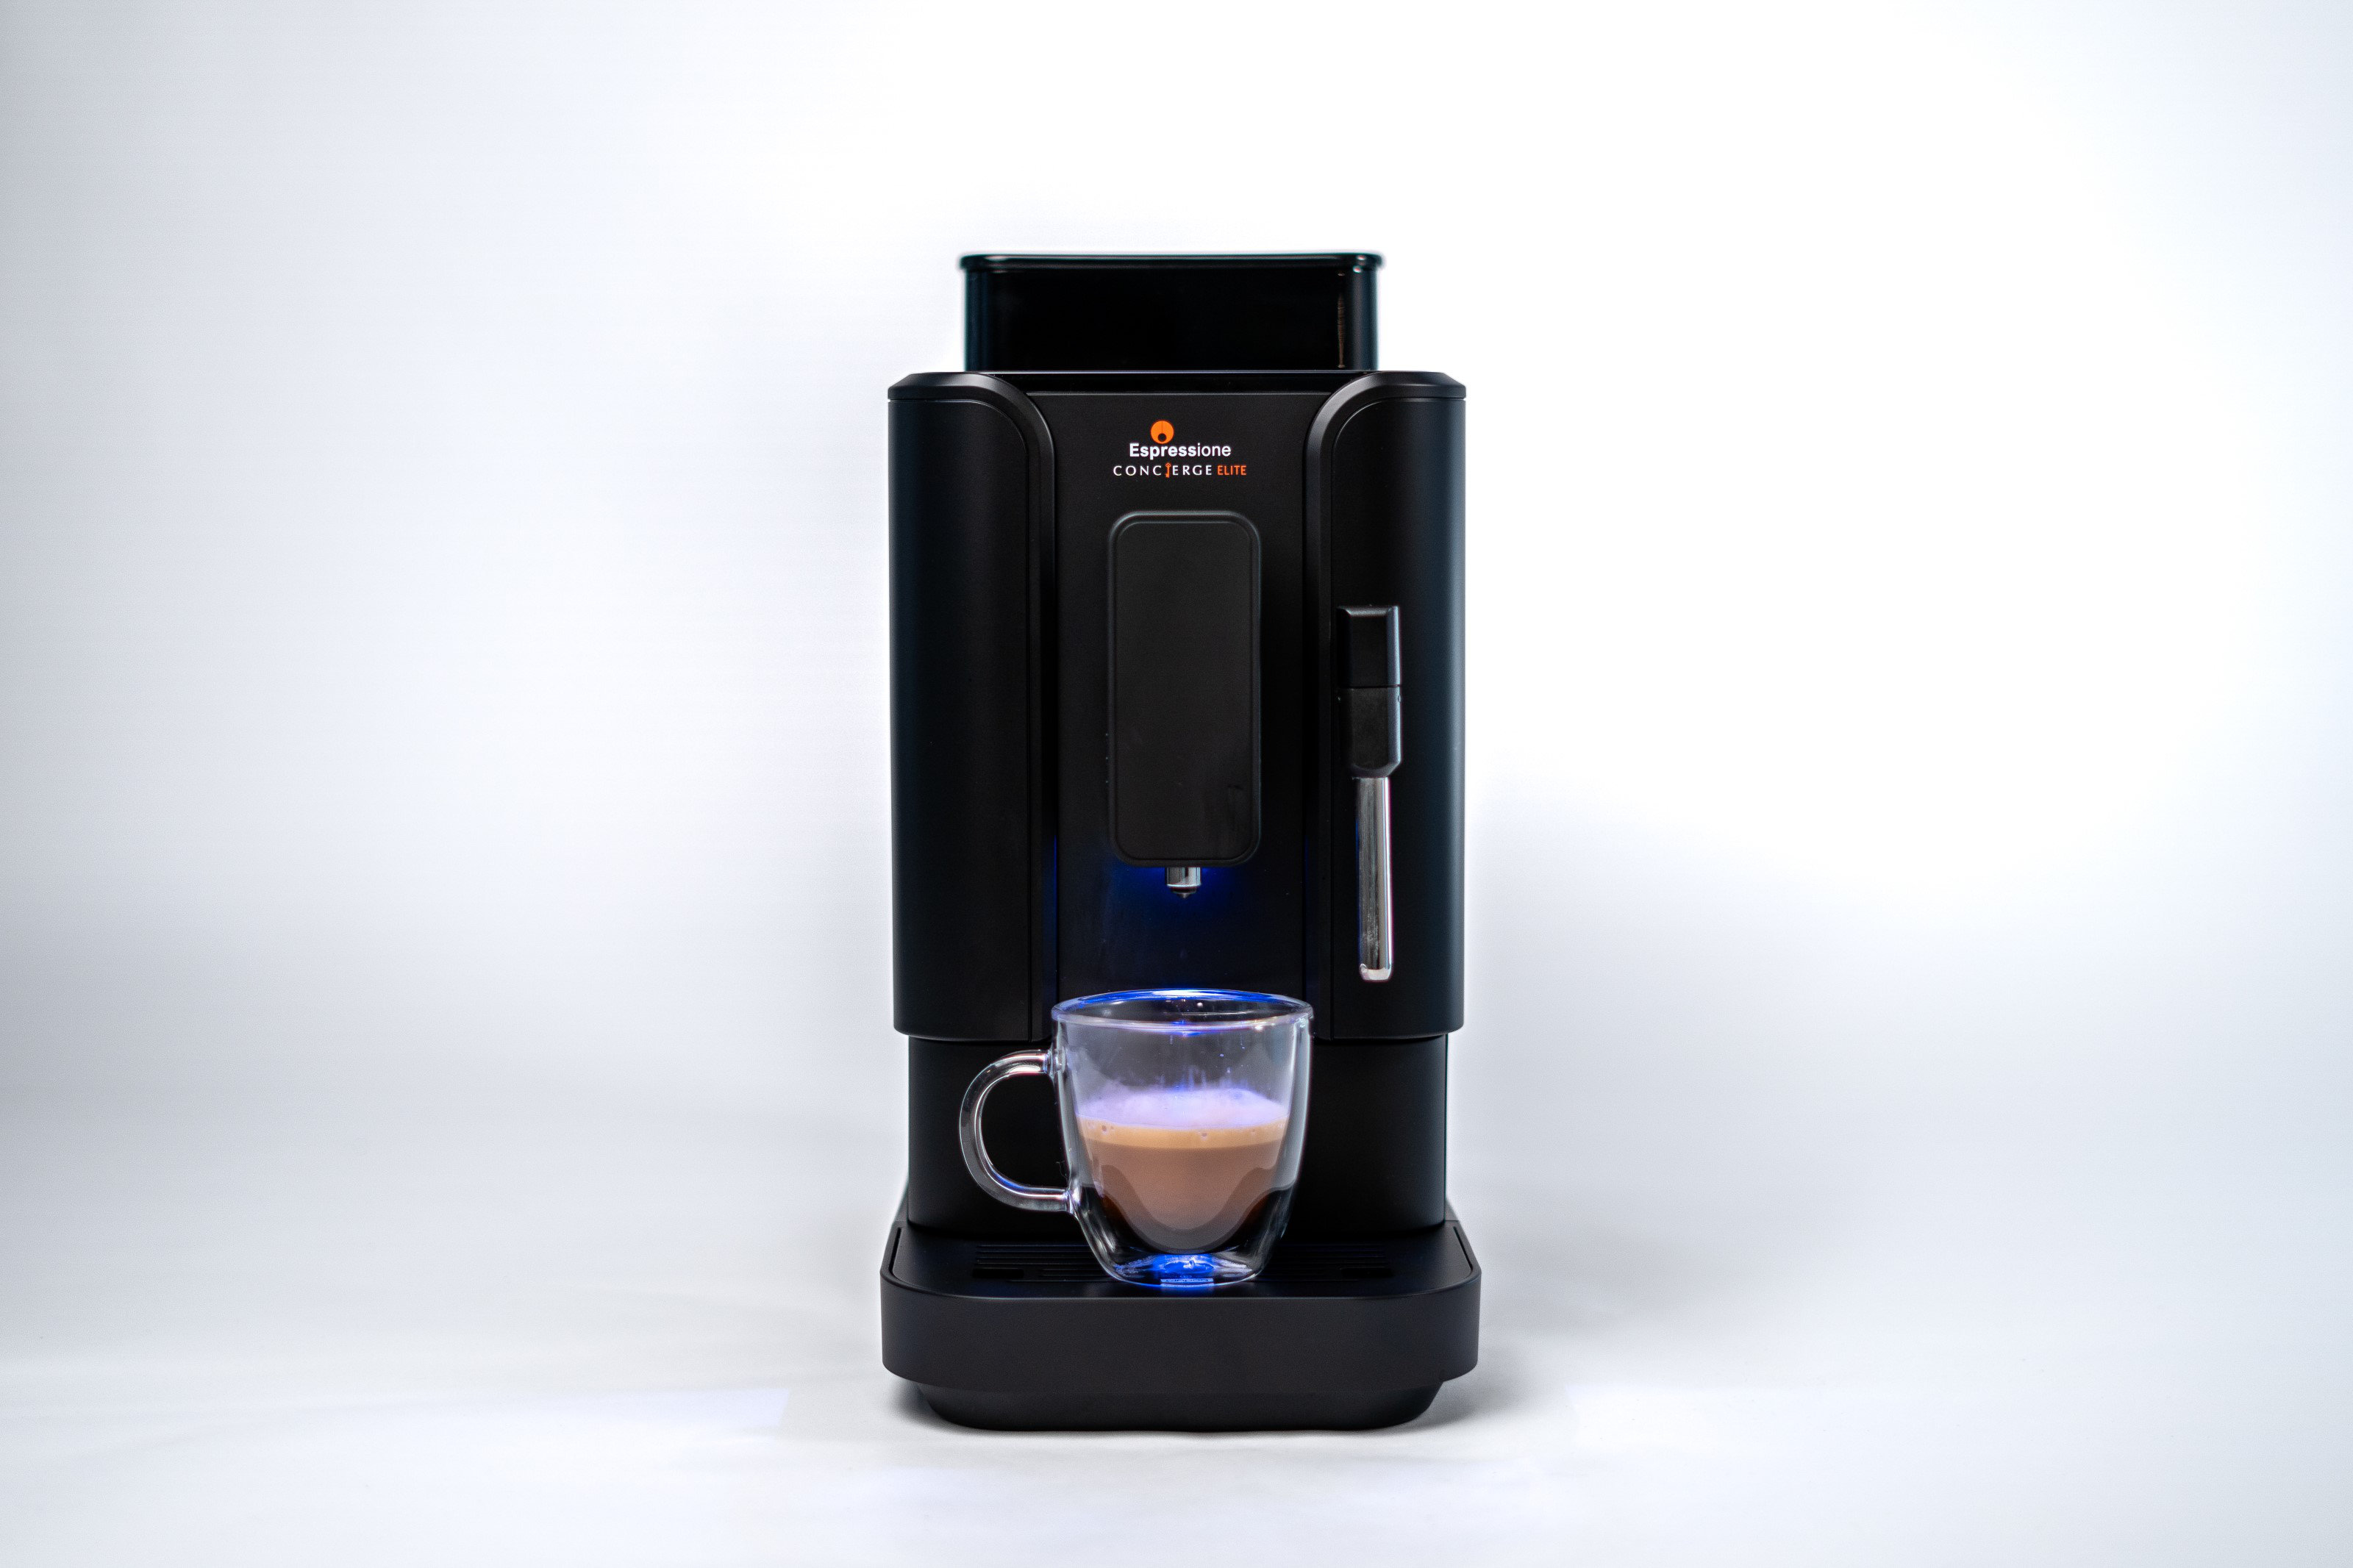 Zulay Magia Super Automatic Espresso Machine in 2023  Automatic espresso  machine, Espresso coffee machine, Milk foam